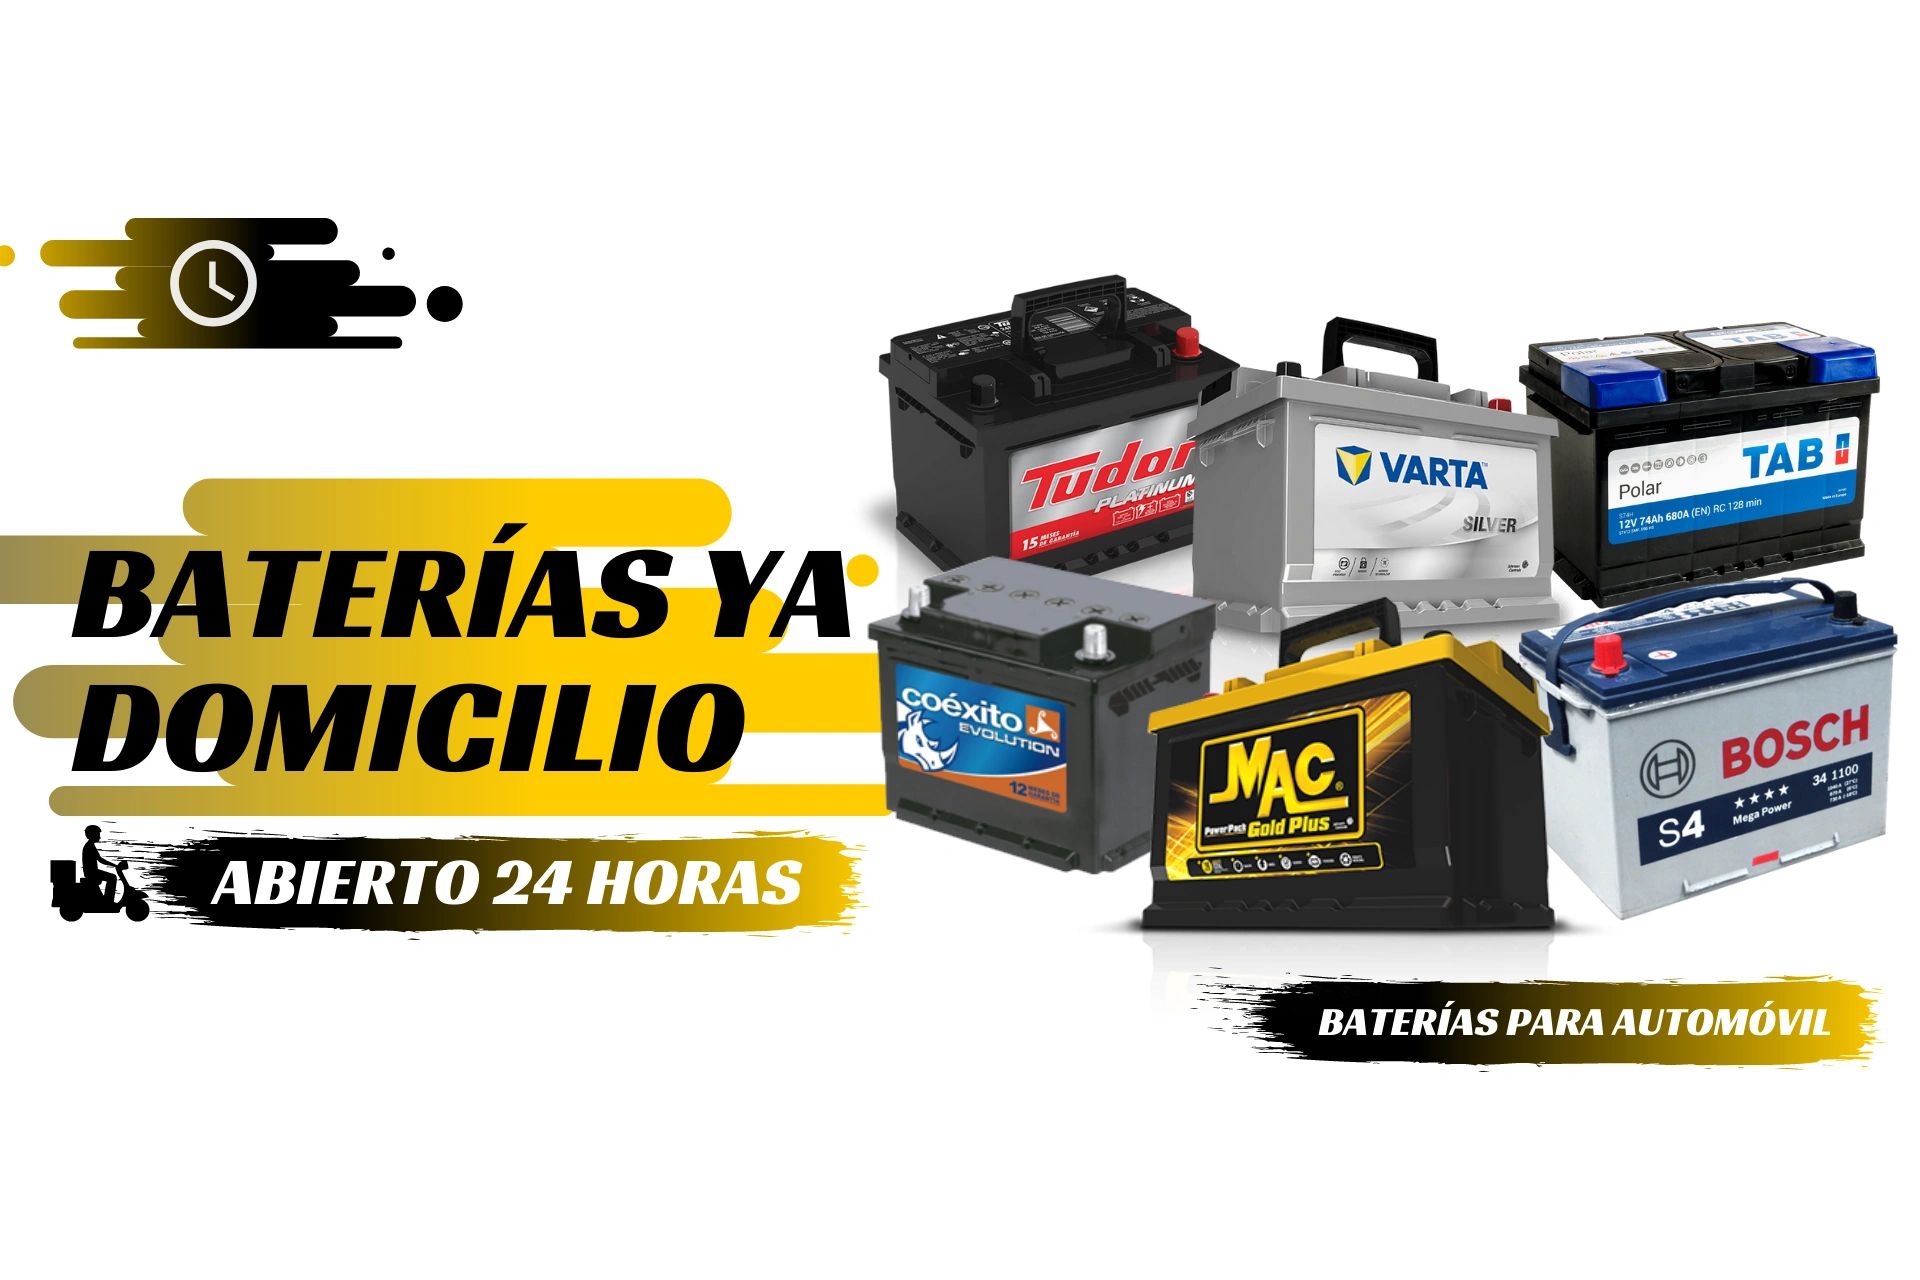 Baterías Ya Domicilio - Marca, Baterias, Marca, Piezas De Automóvil